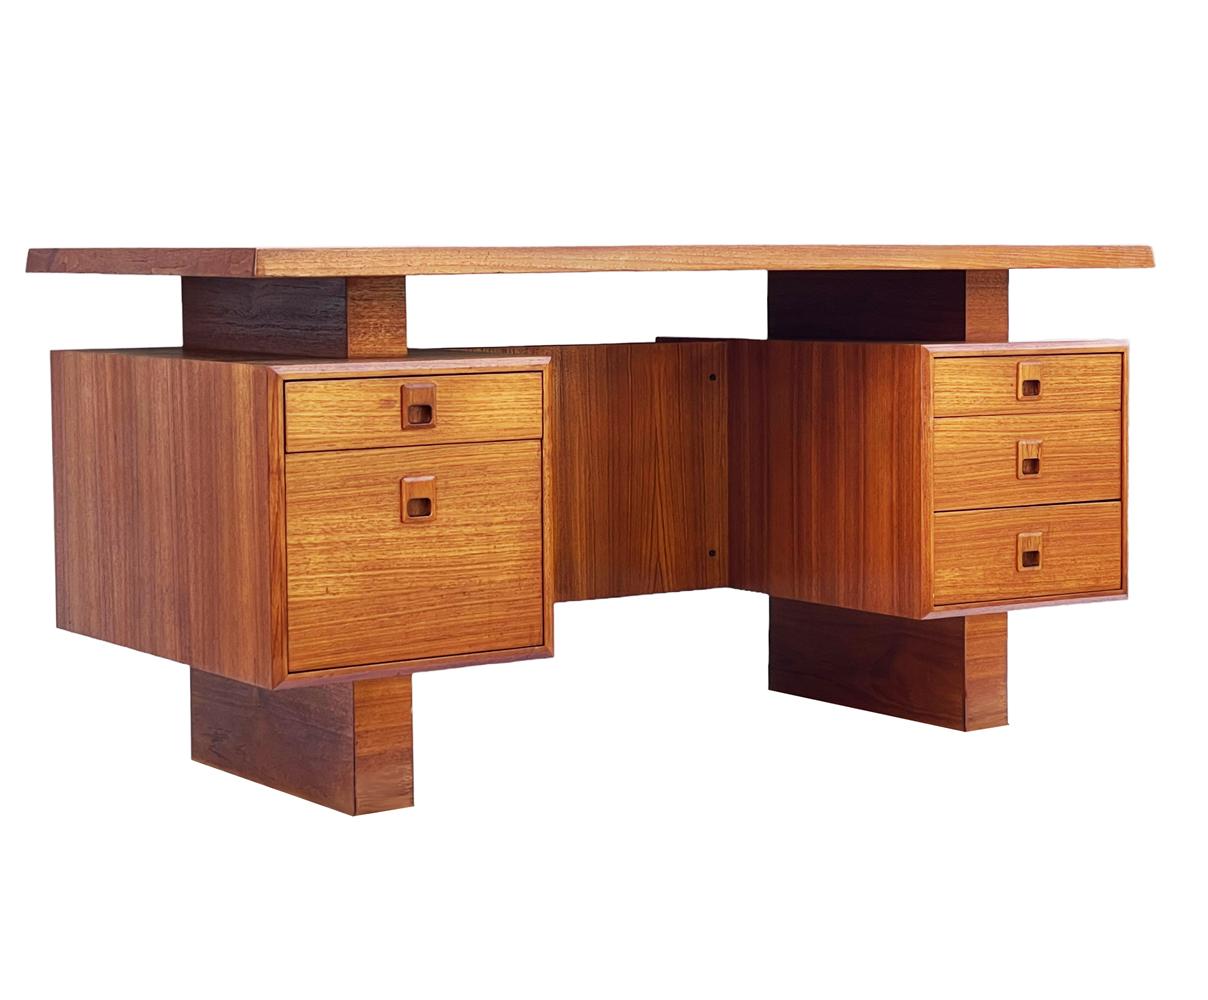 Großer Teakholz-Schreibtisch aus Dänemark CIRCA 1960er Jahre. Wunderschönes schwebendes Top-Design mit viel Stauraum. Sehr sauber und einsatzbereit. 